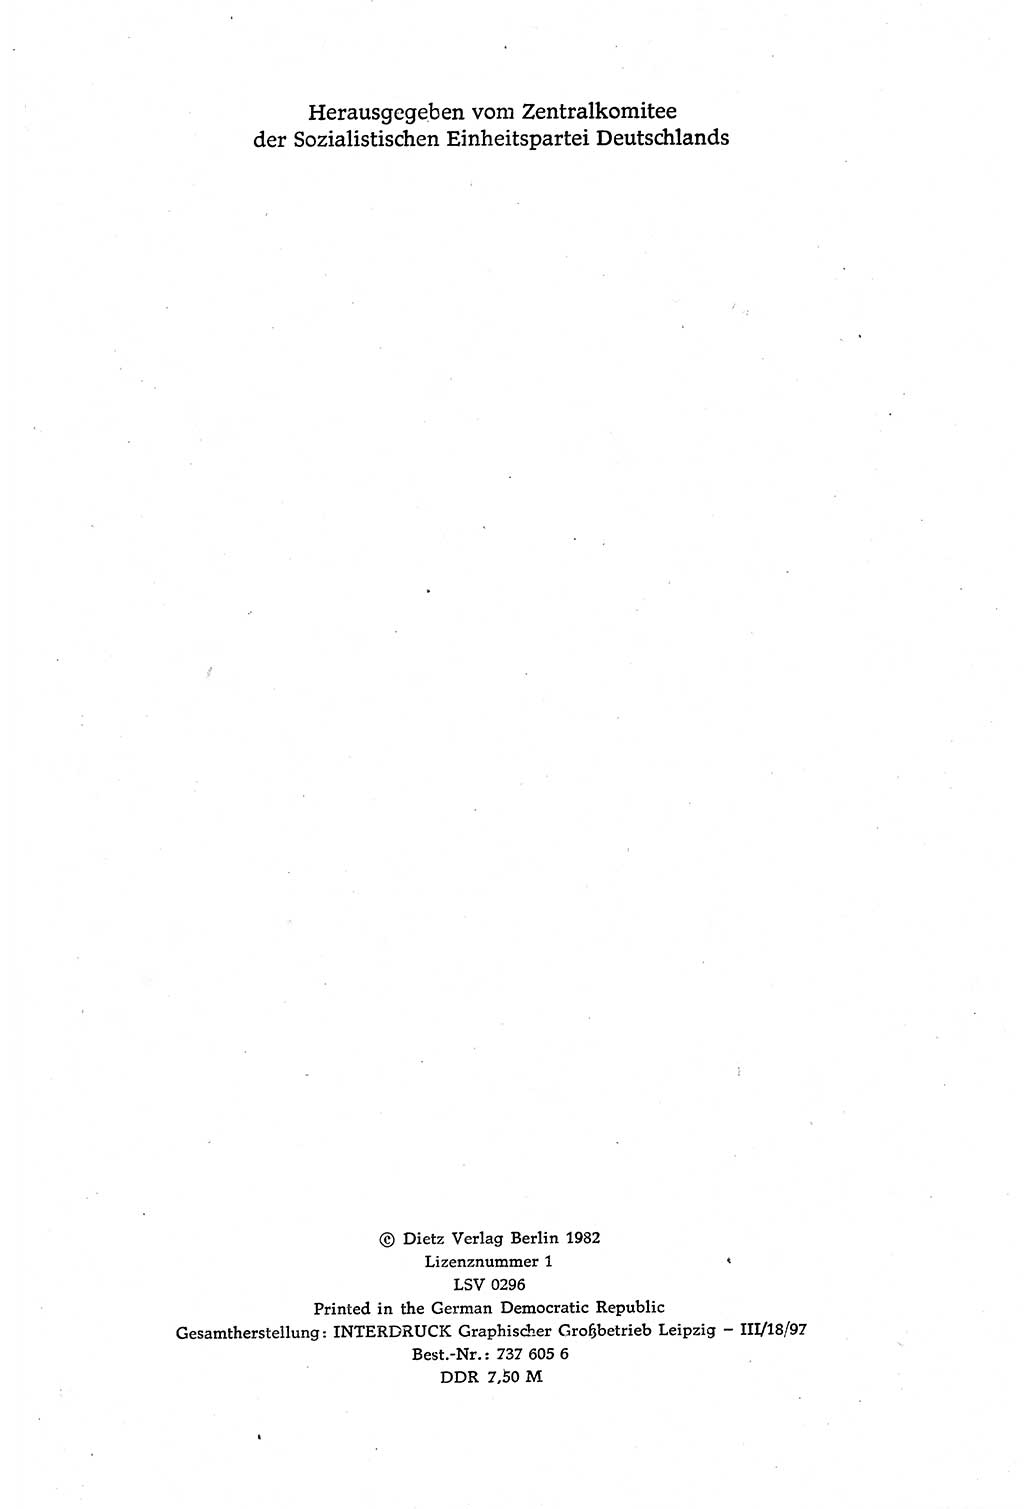 Dokumente der Sozialistischen Einheitspartei Deutschlands (SED) [Deutsche Demokratische Republik (DDR)] 1980-1981, Seite 4 (Dok. SED DDR 1980-1981, S. 4)